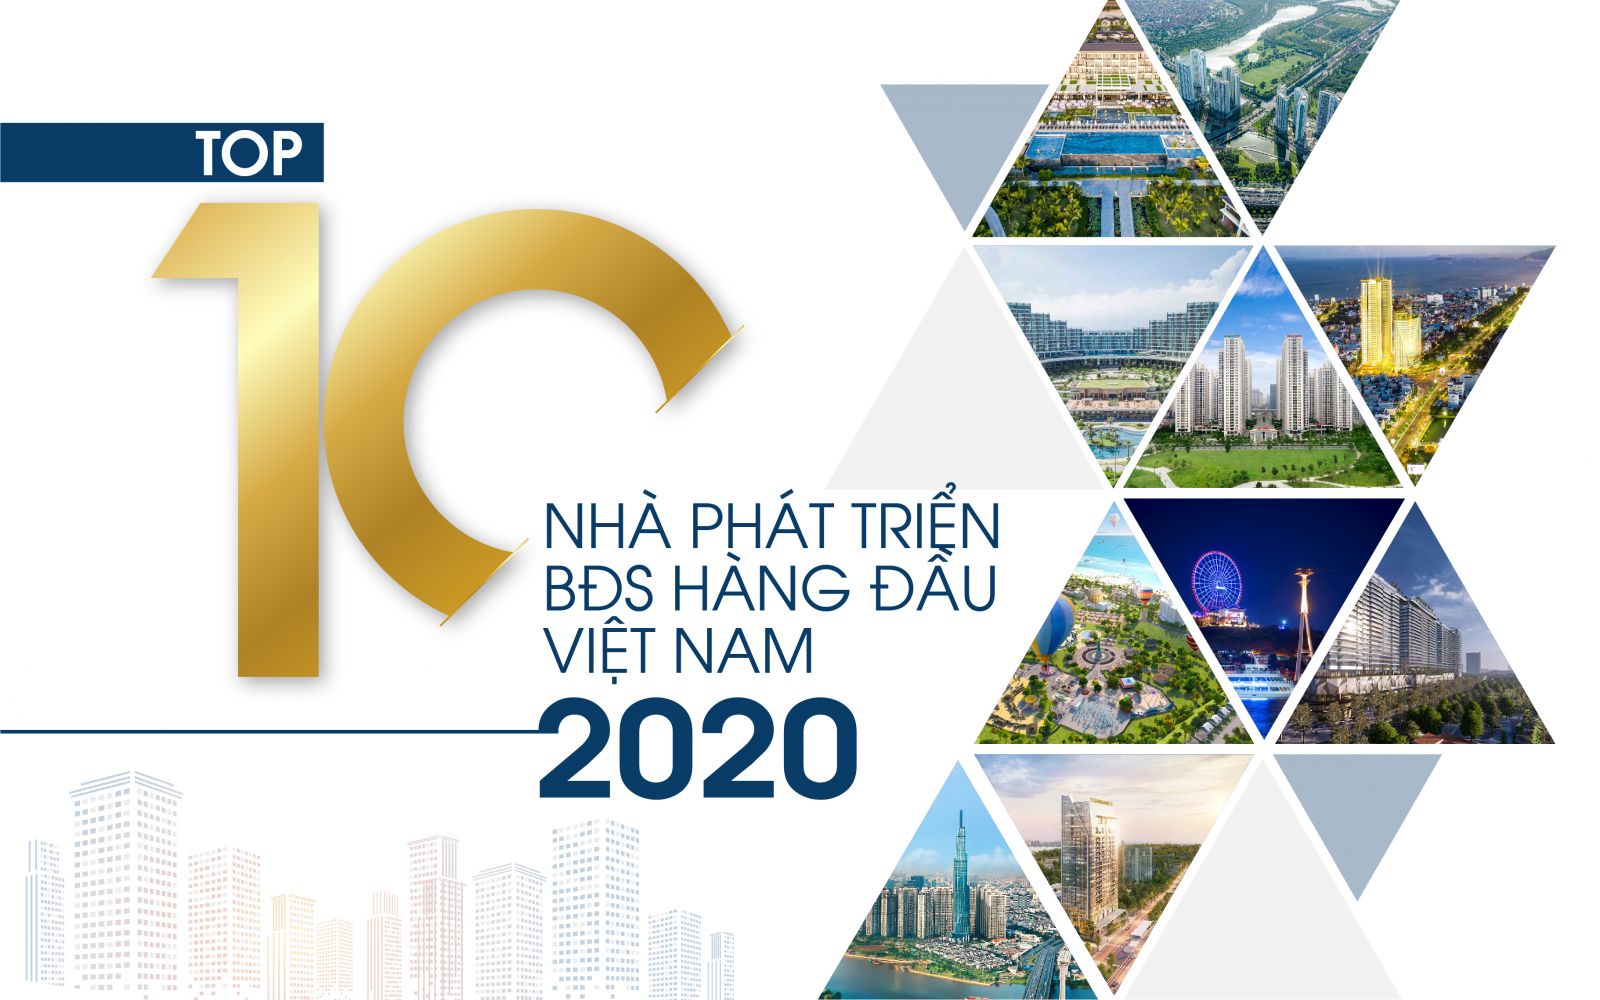 Top 10 Nhà phát triển bất động sản hàng đầu Việt Nam năm 2020